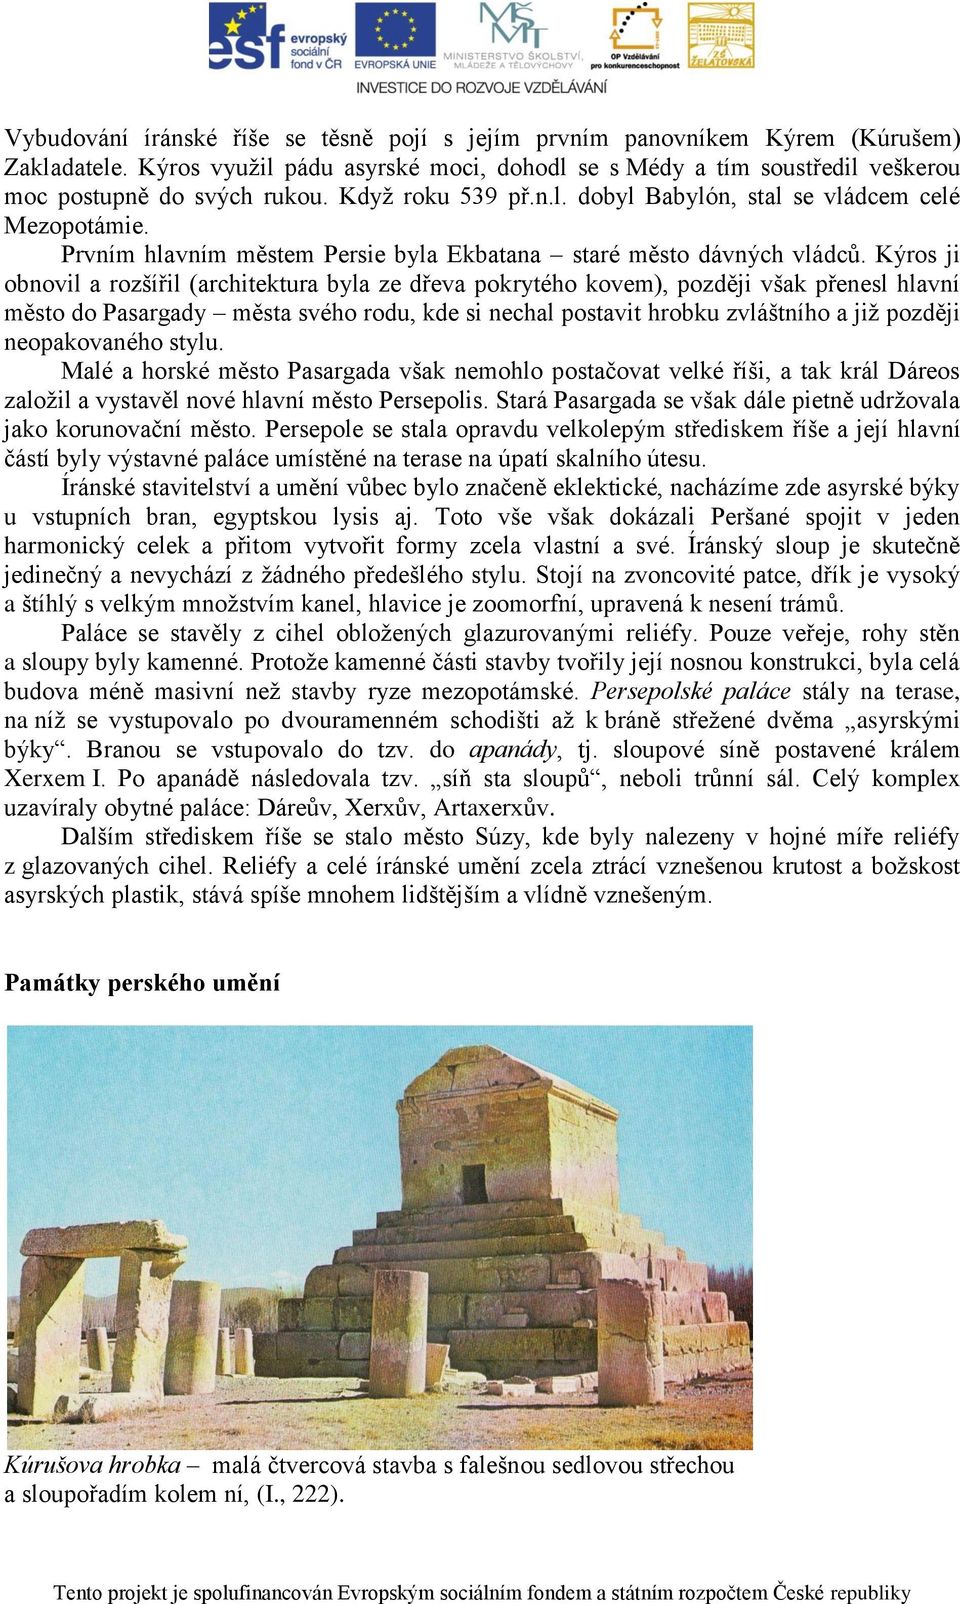 Kýros ji obnovil a rozšířil (architektura byla ze dřeva pokrytého kovem), později však přenesl hlavní město do Pasargady města svého rodu, kde si nechal postavit hrobku zvláštního a již později